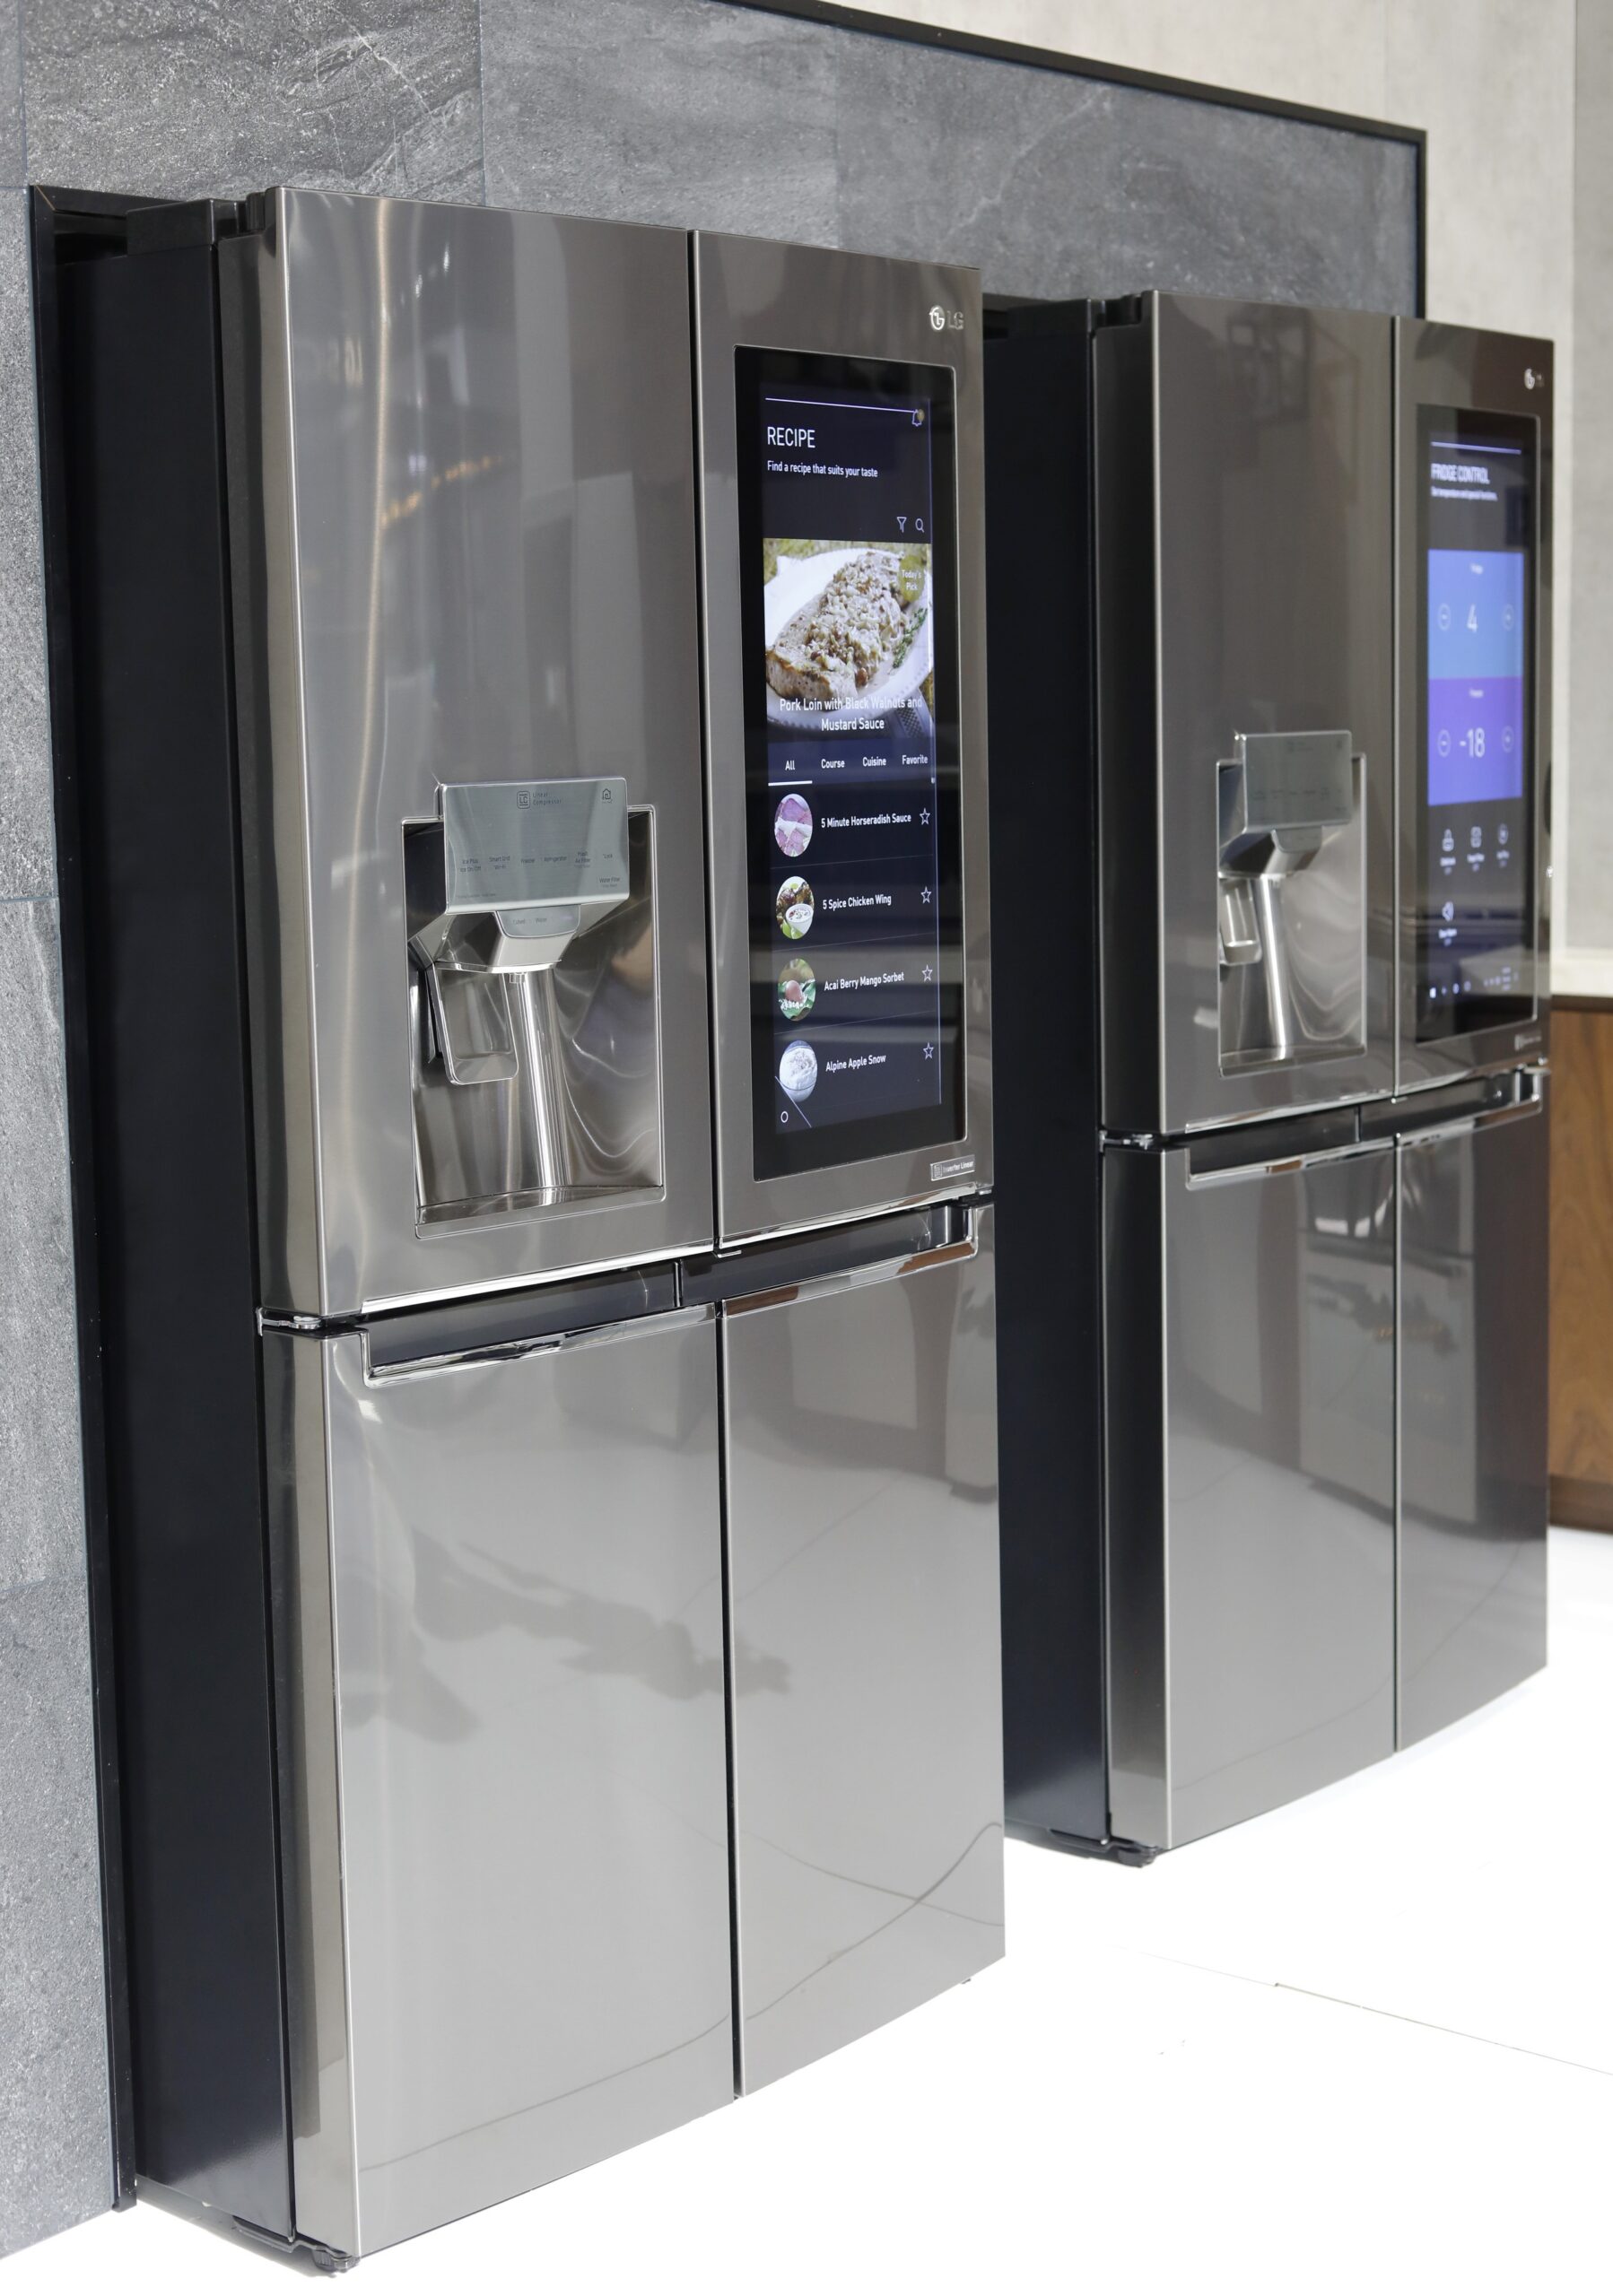 Two LG InstaView Door-in-Door refrigerators in the LG display zone at CES 2017